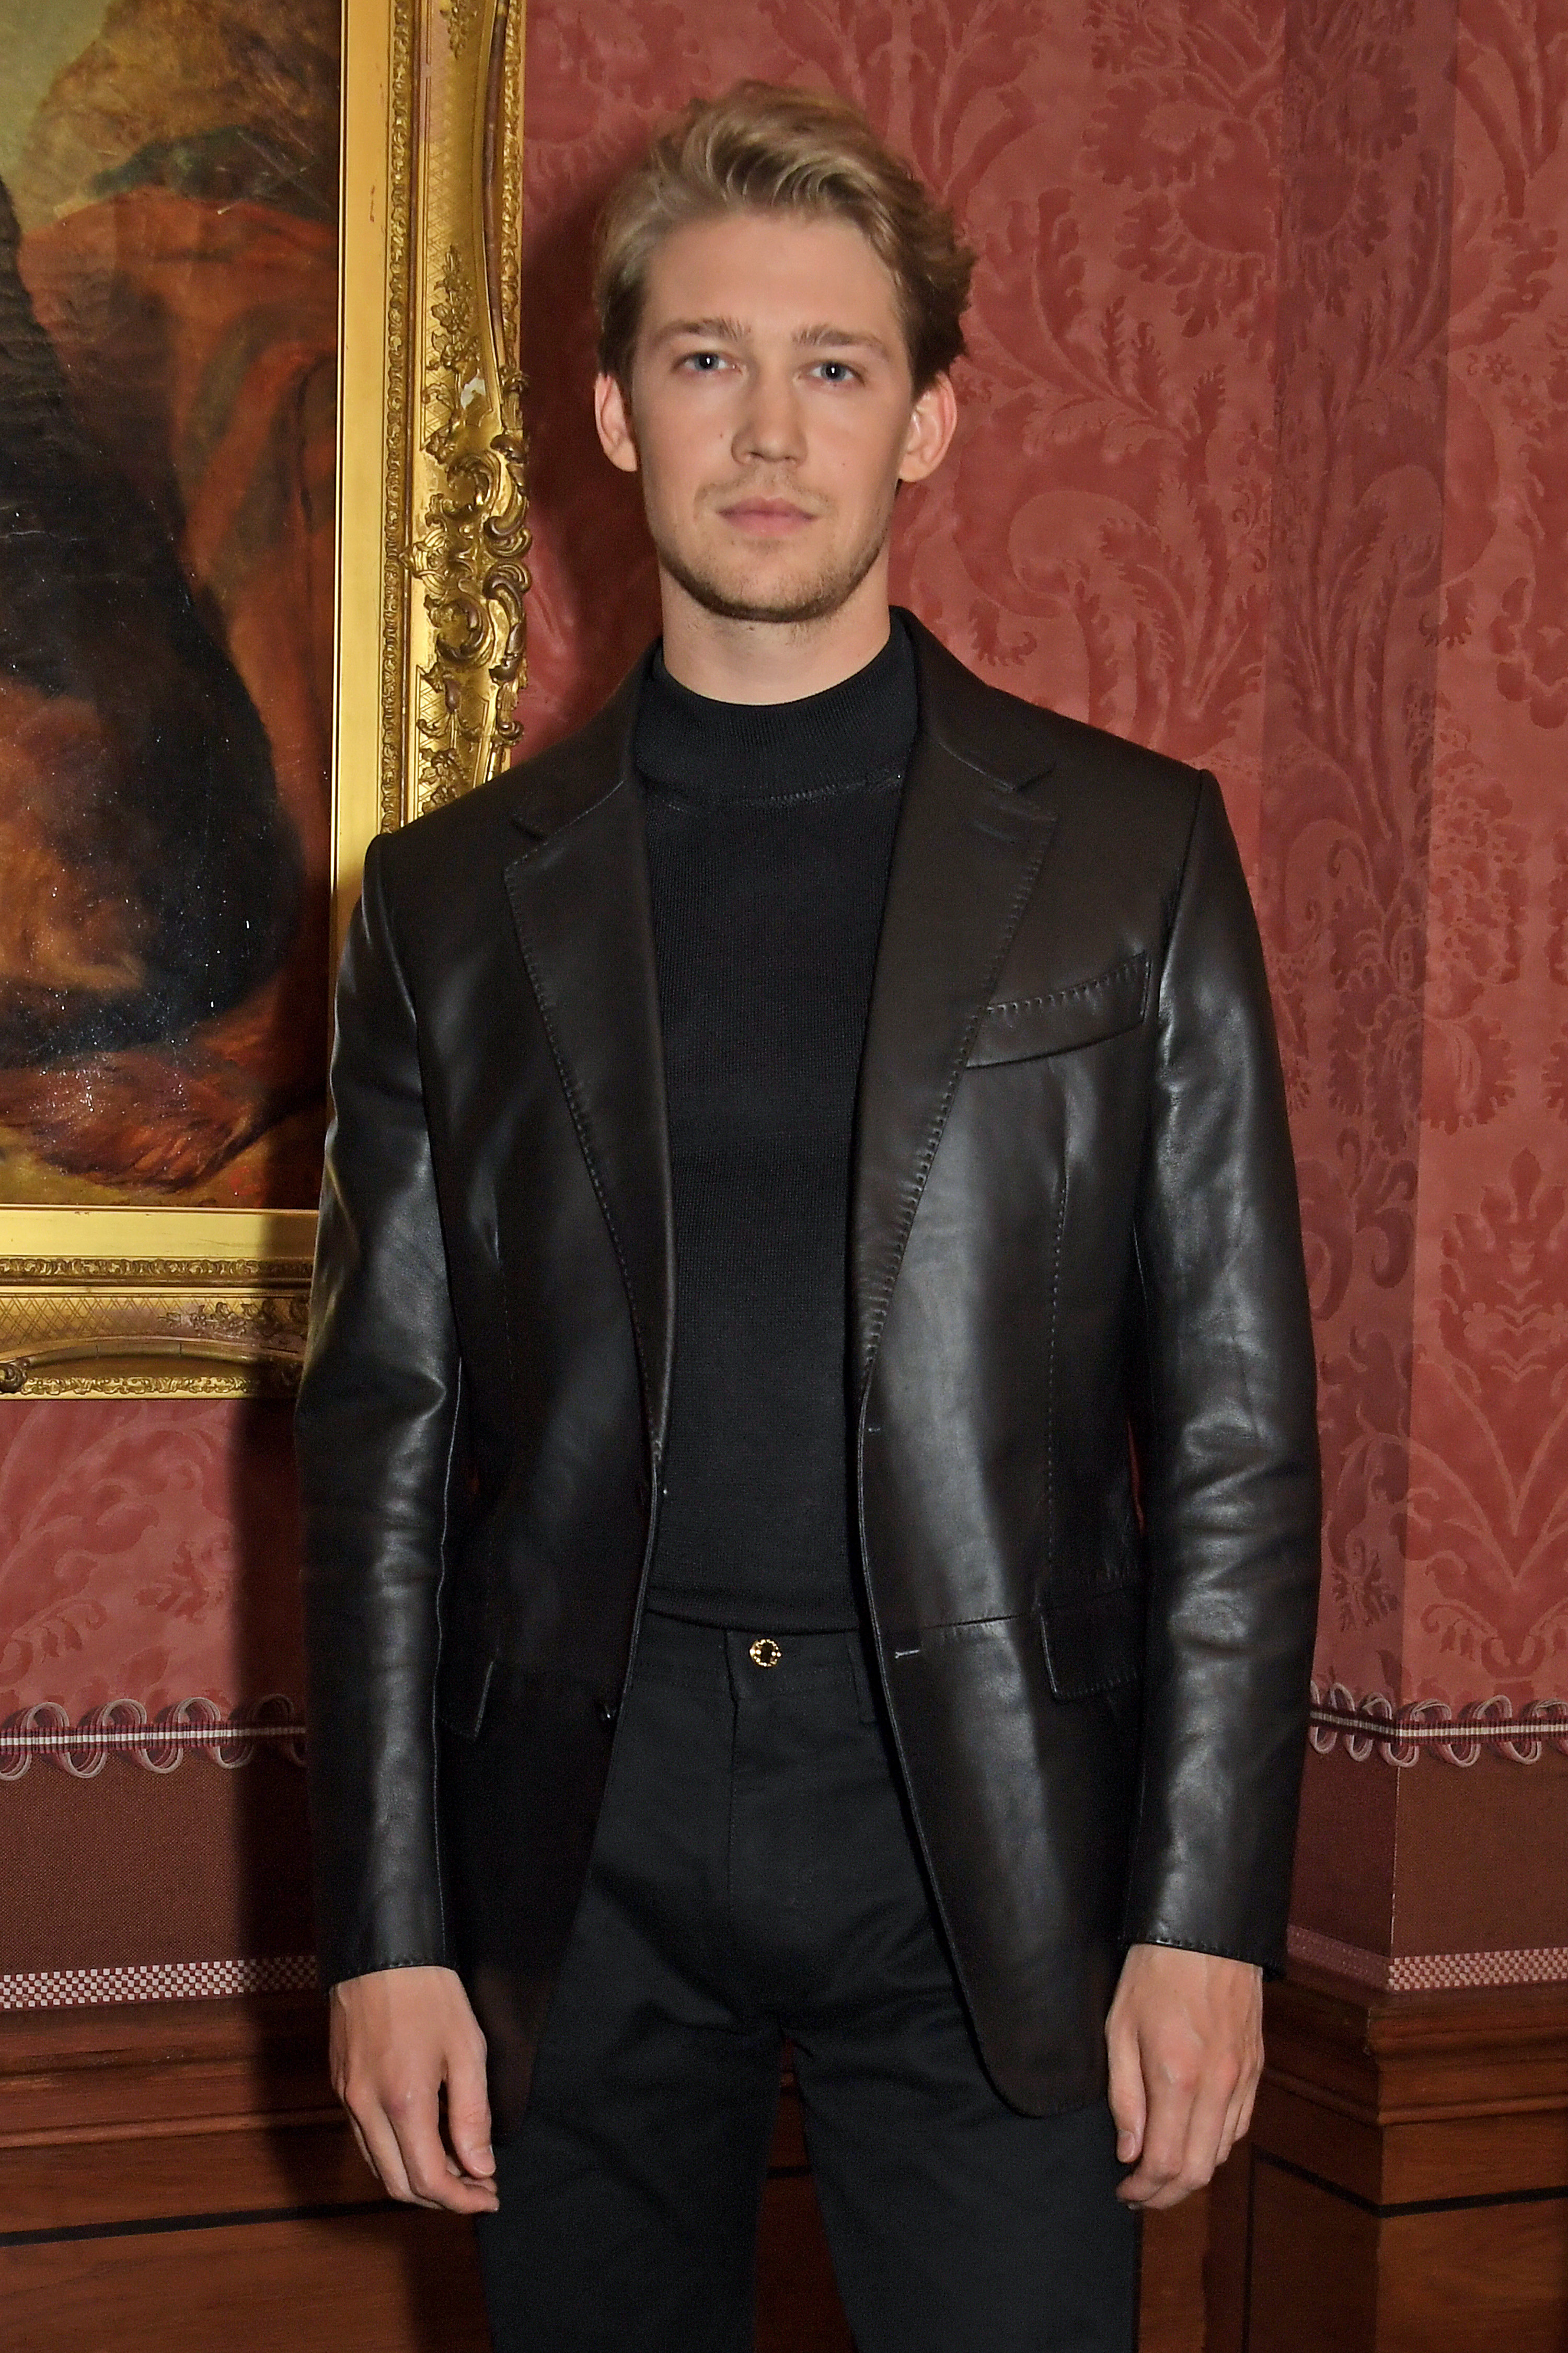 Joe posing in a leather jacket